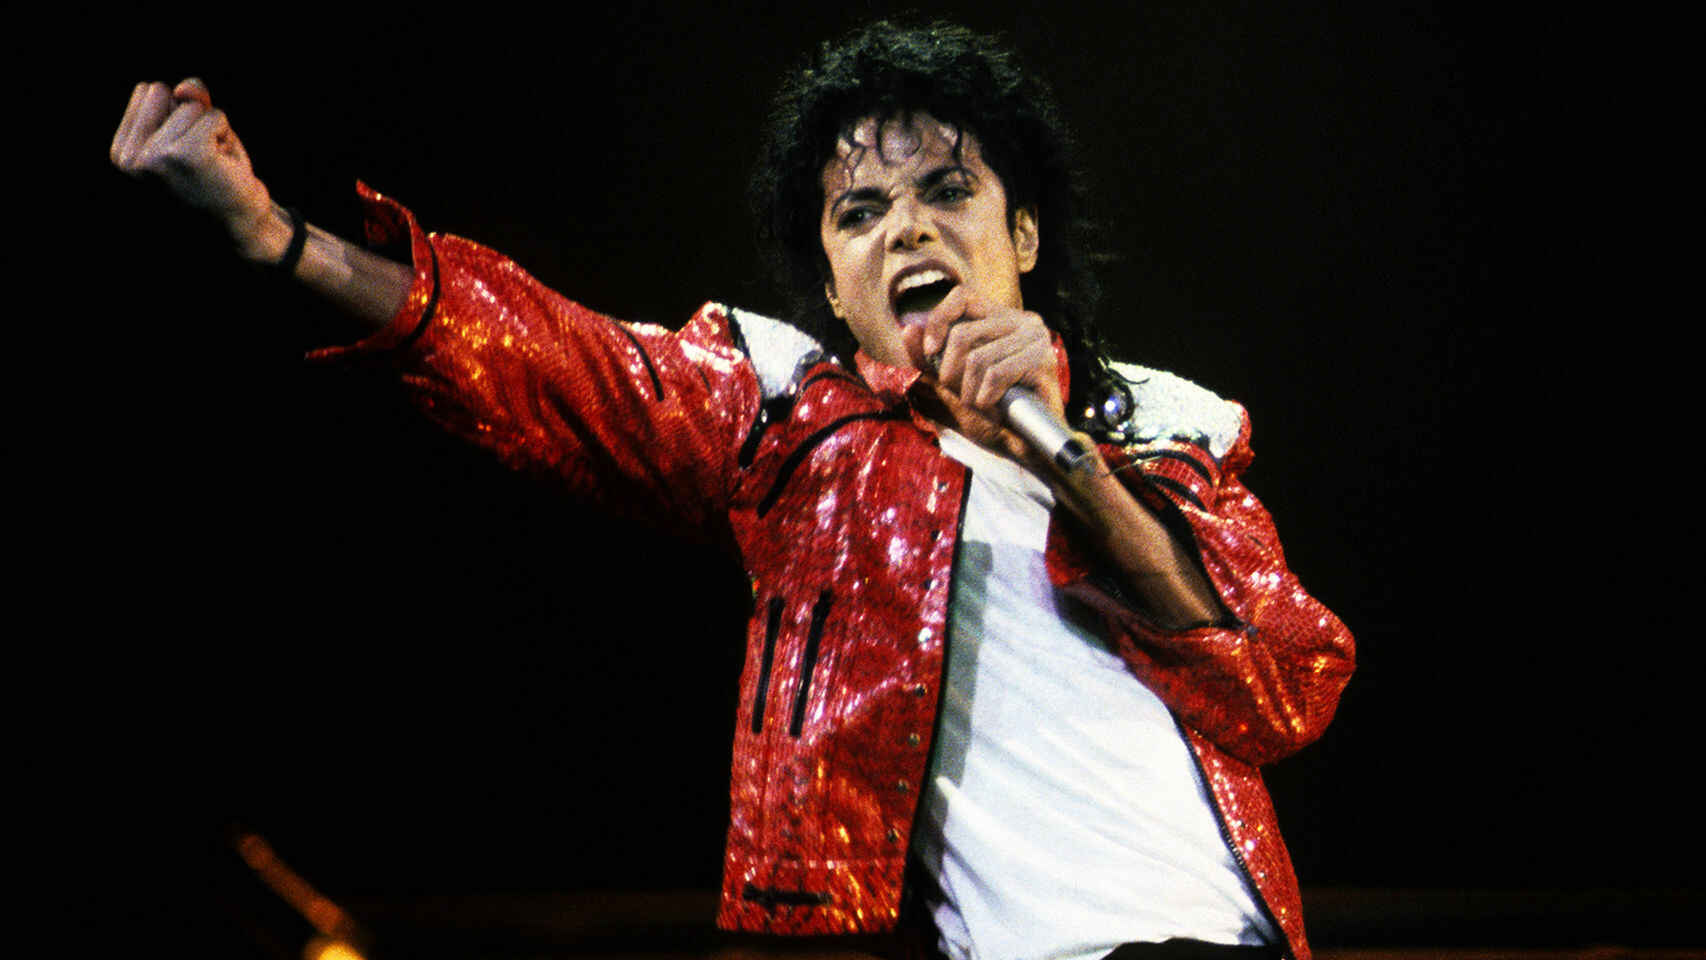 Revelat el secret de Michael Jackson que els seus fans no voldran assumir